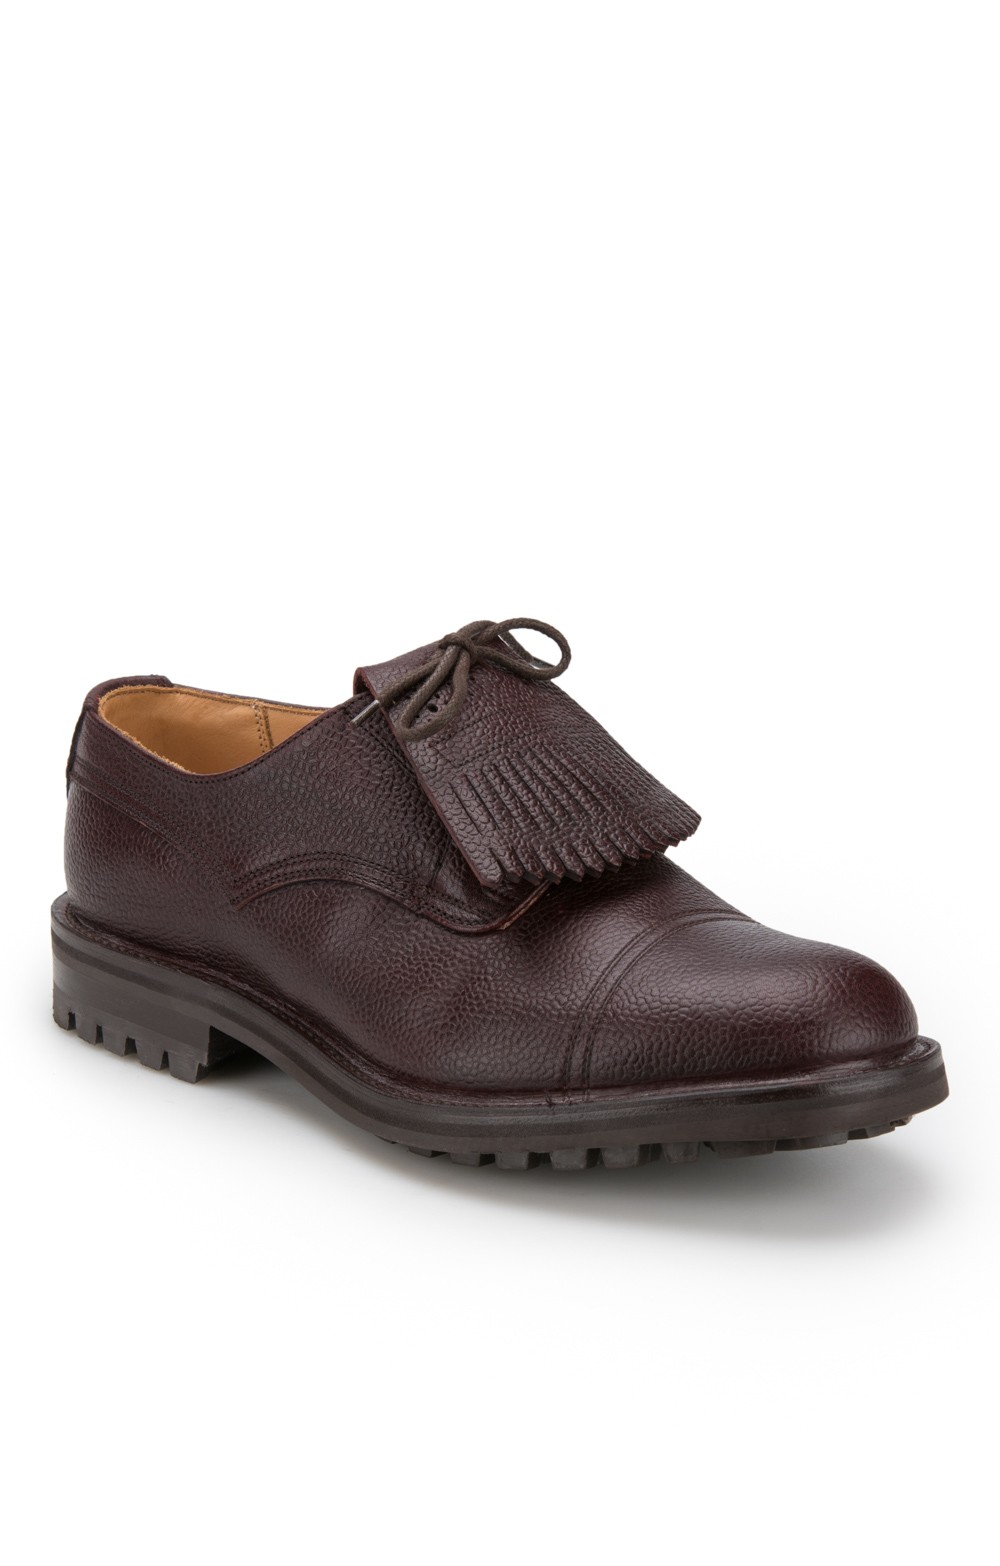 henley comfort men's shoes